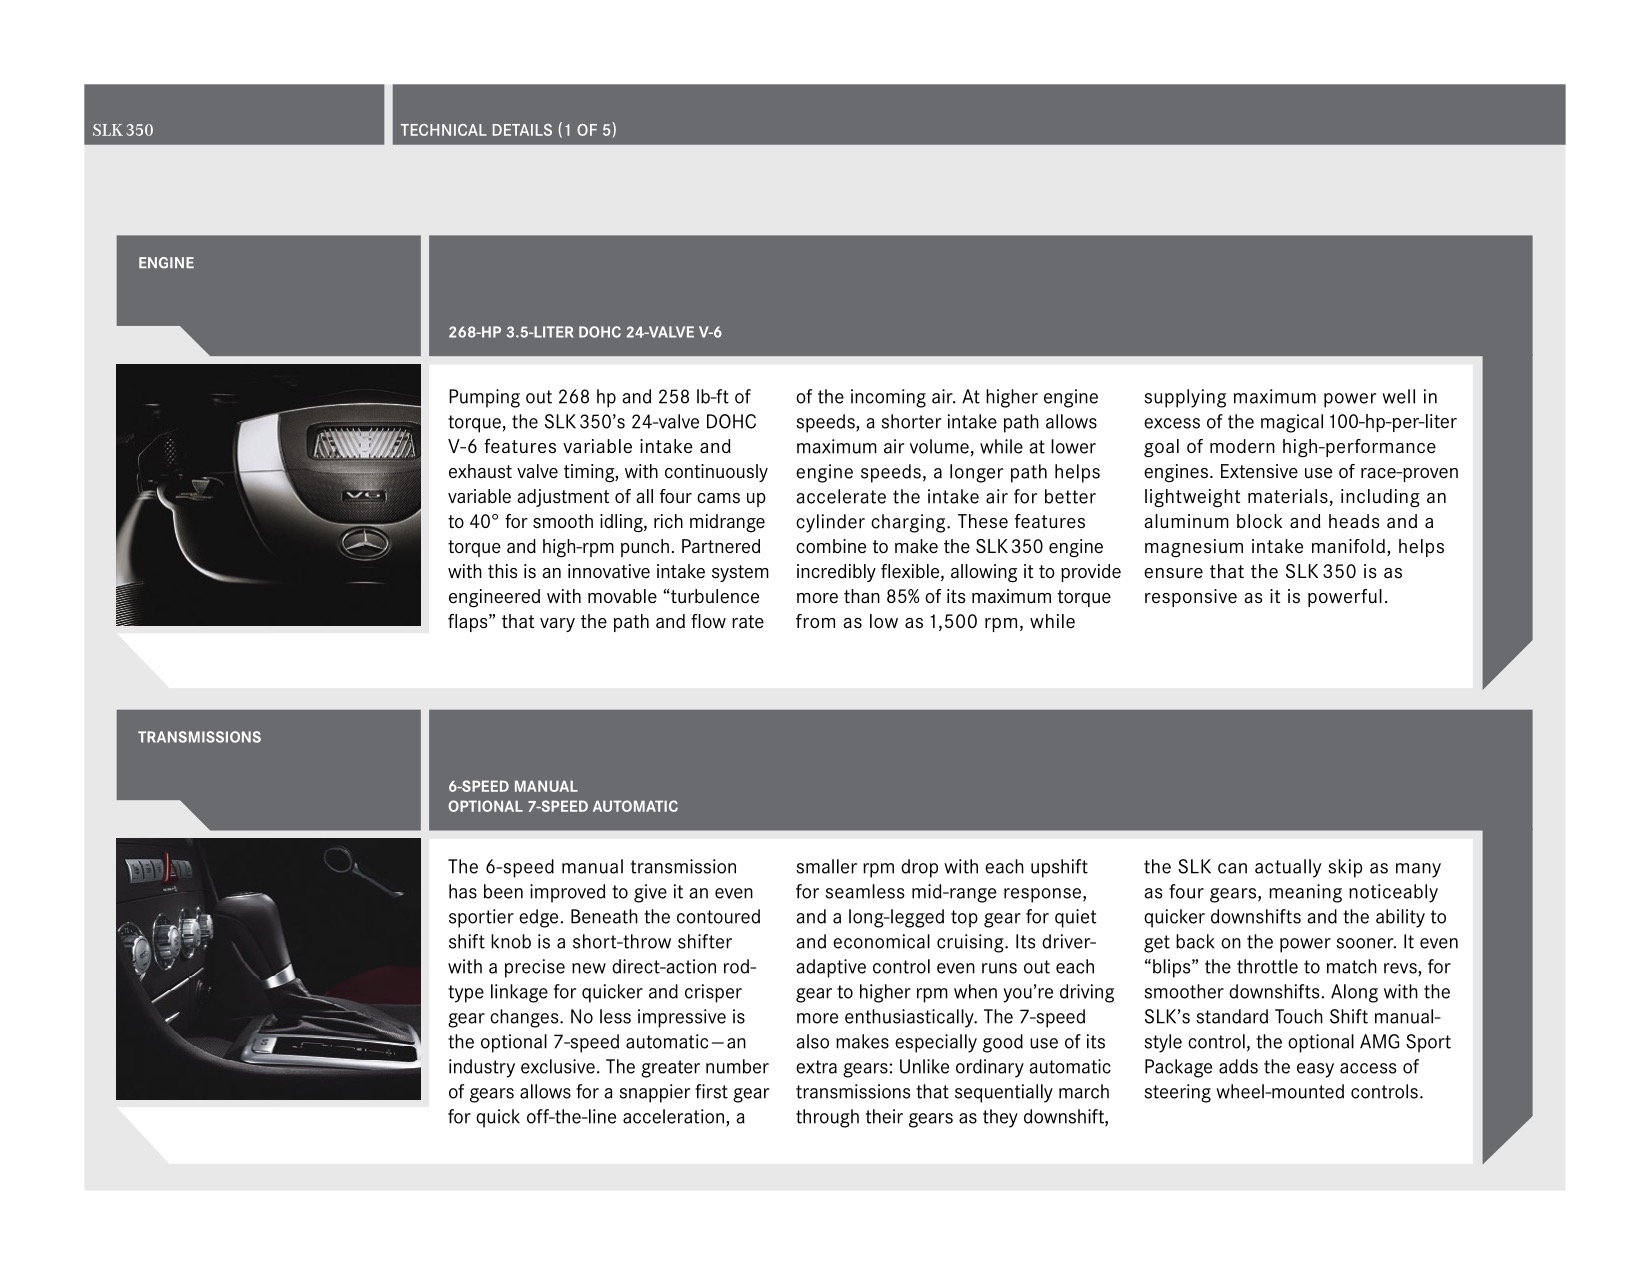 2005 Mercedes-Benz SLK Brochure Page 17